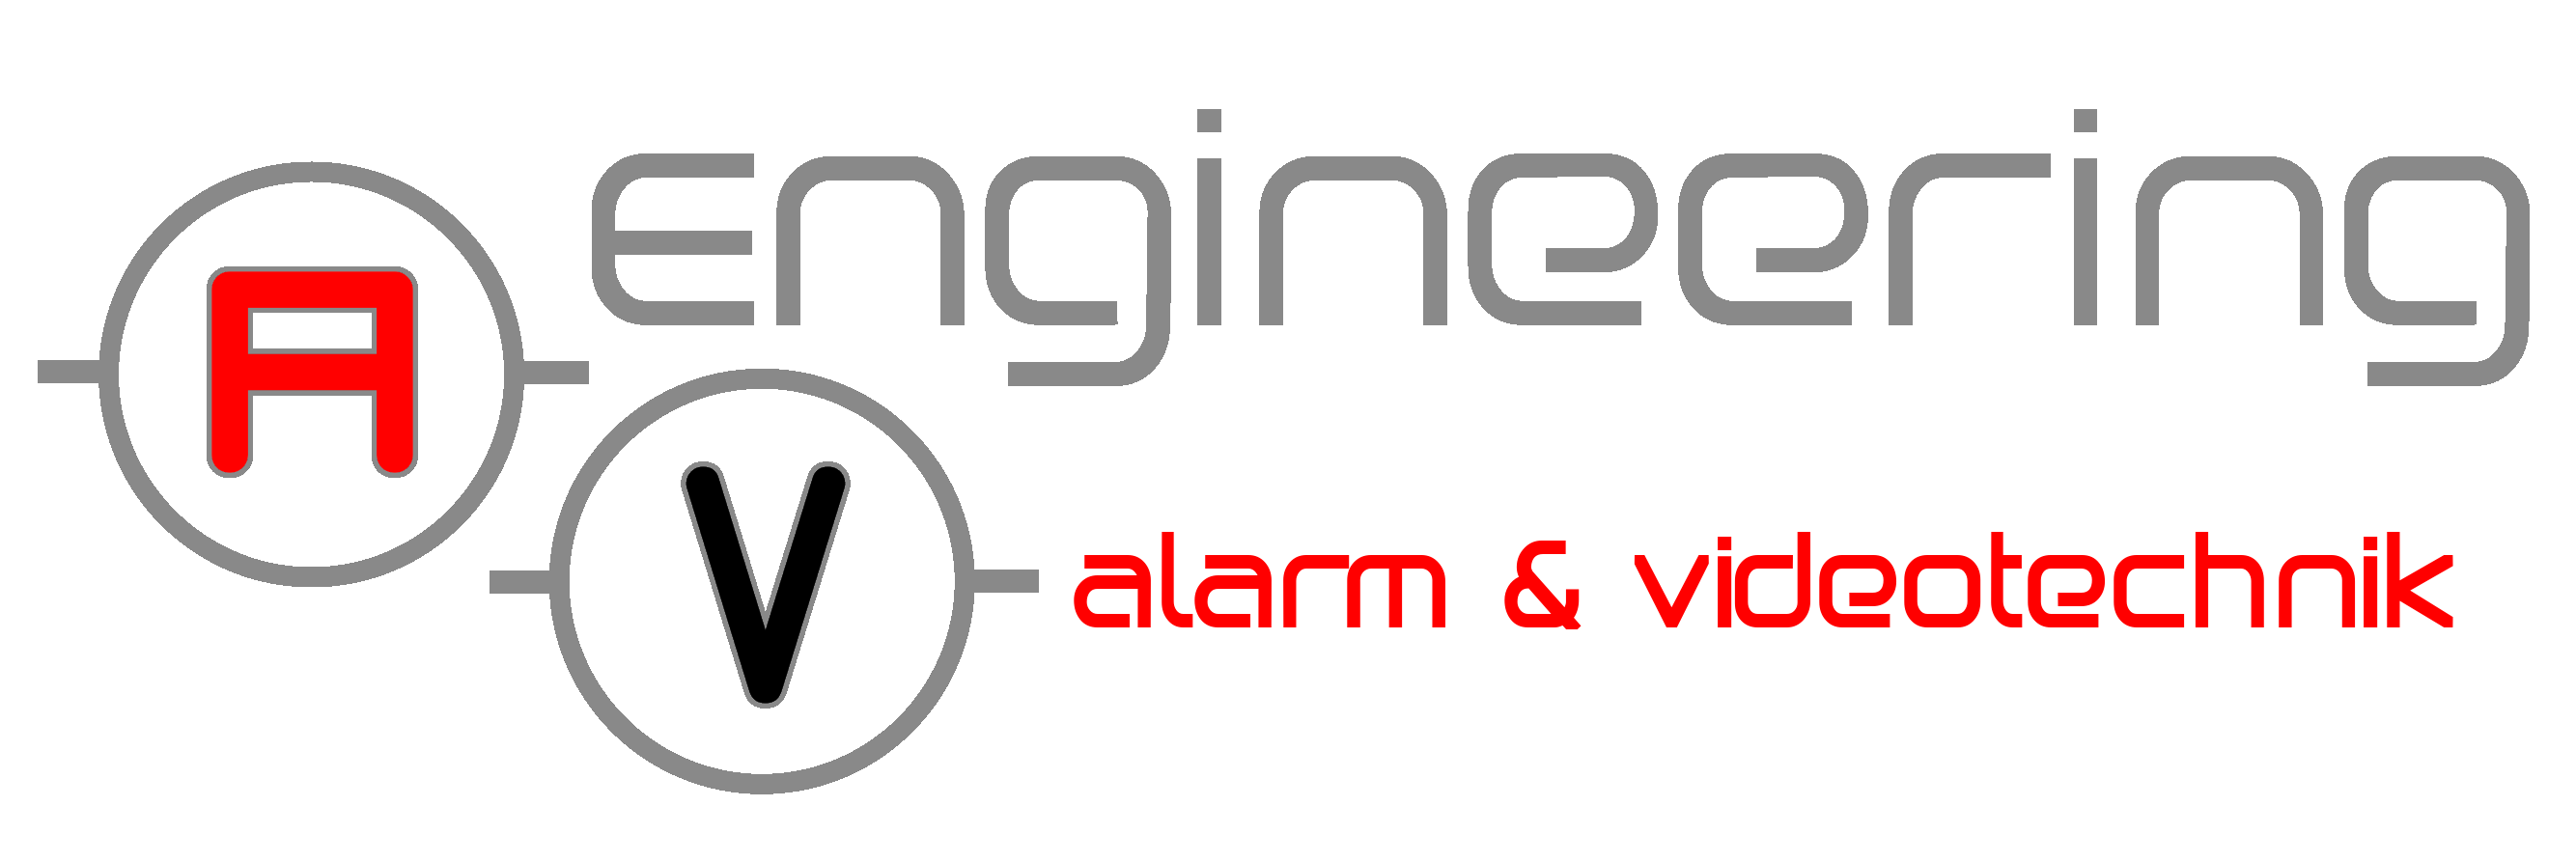 AV-Engineering GmbH & Co. KG Alarm & Videotechnik